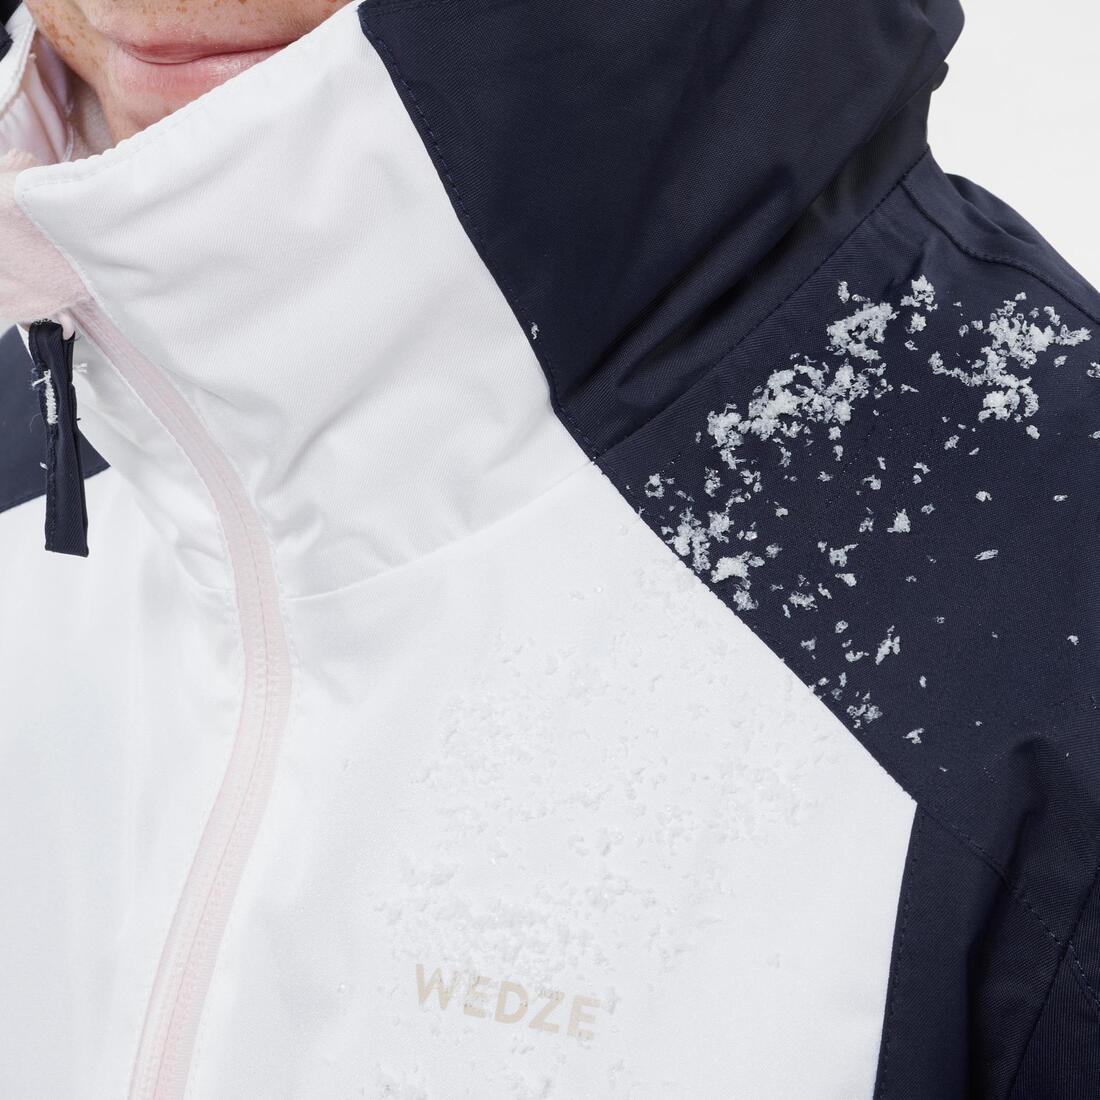 WED'ZE(ウェッゼ) スキー ジャケット 500 キッズ